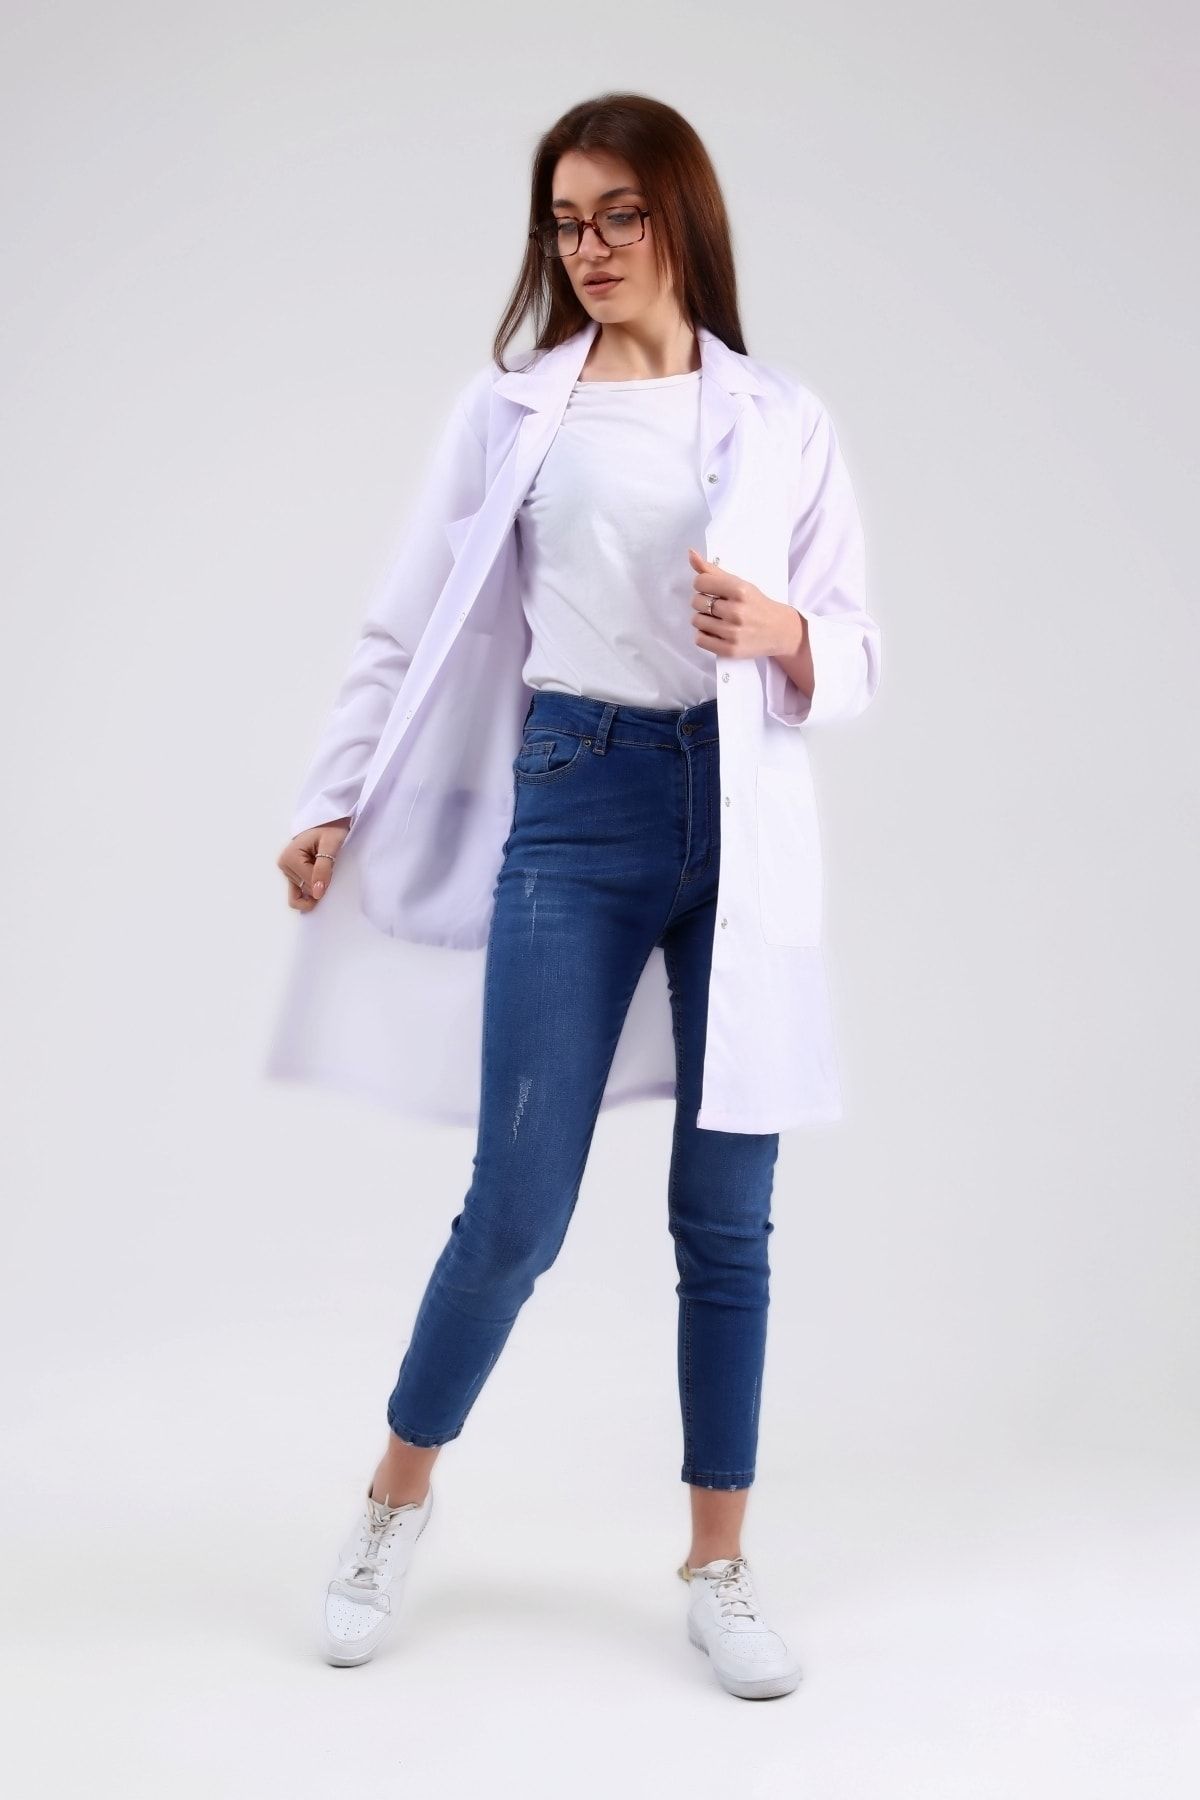 Çamdalı İş Elbiseleri - Beyaz Alpaka Doktor Hemşire Kadın Önlük - Beyaz Kadın Iş Önlüğü